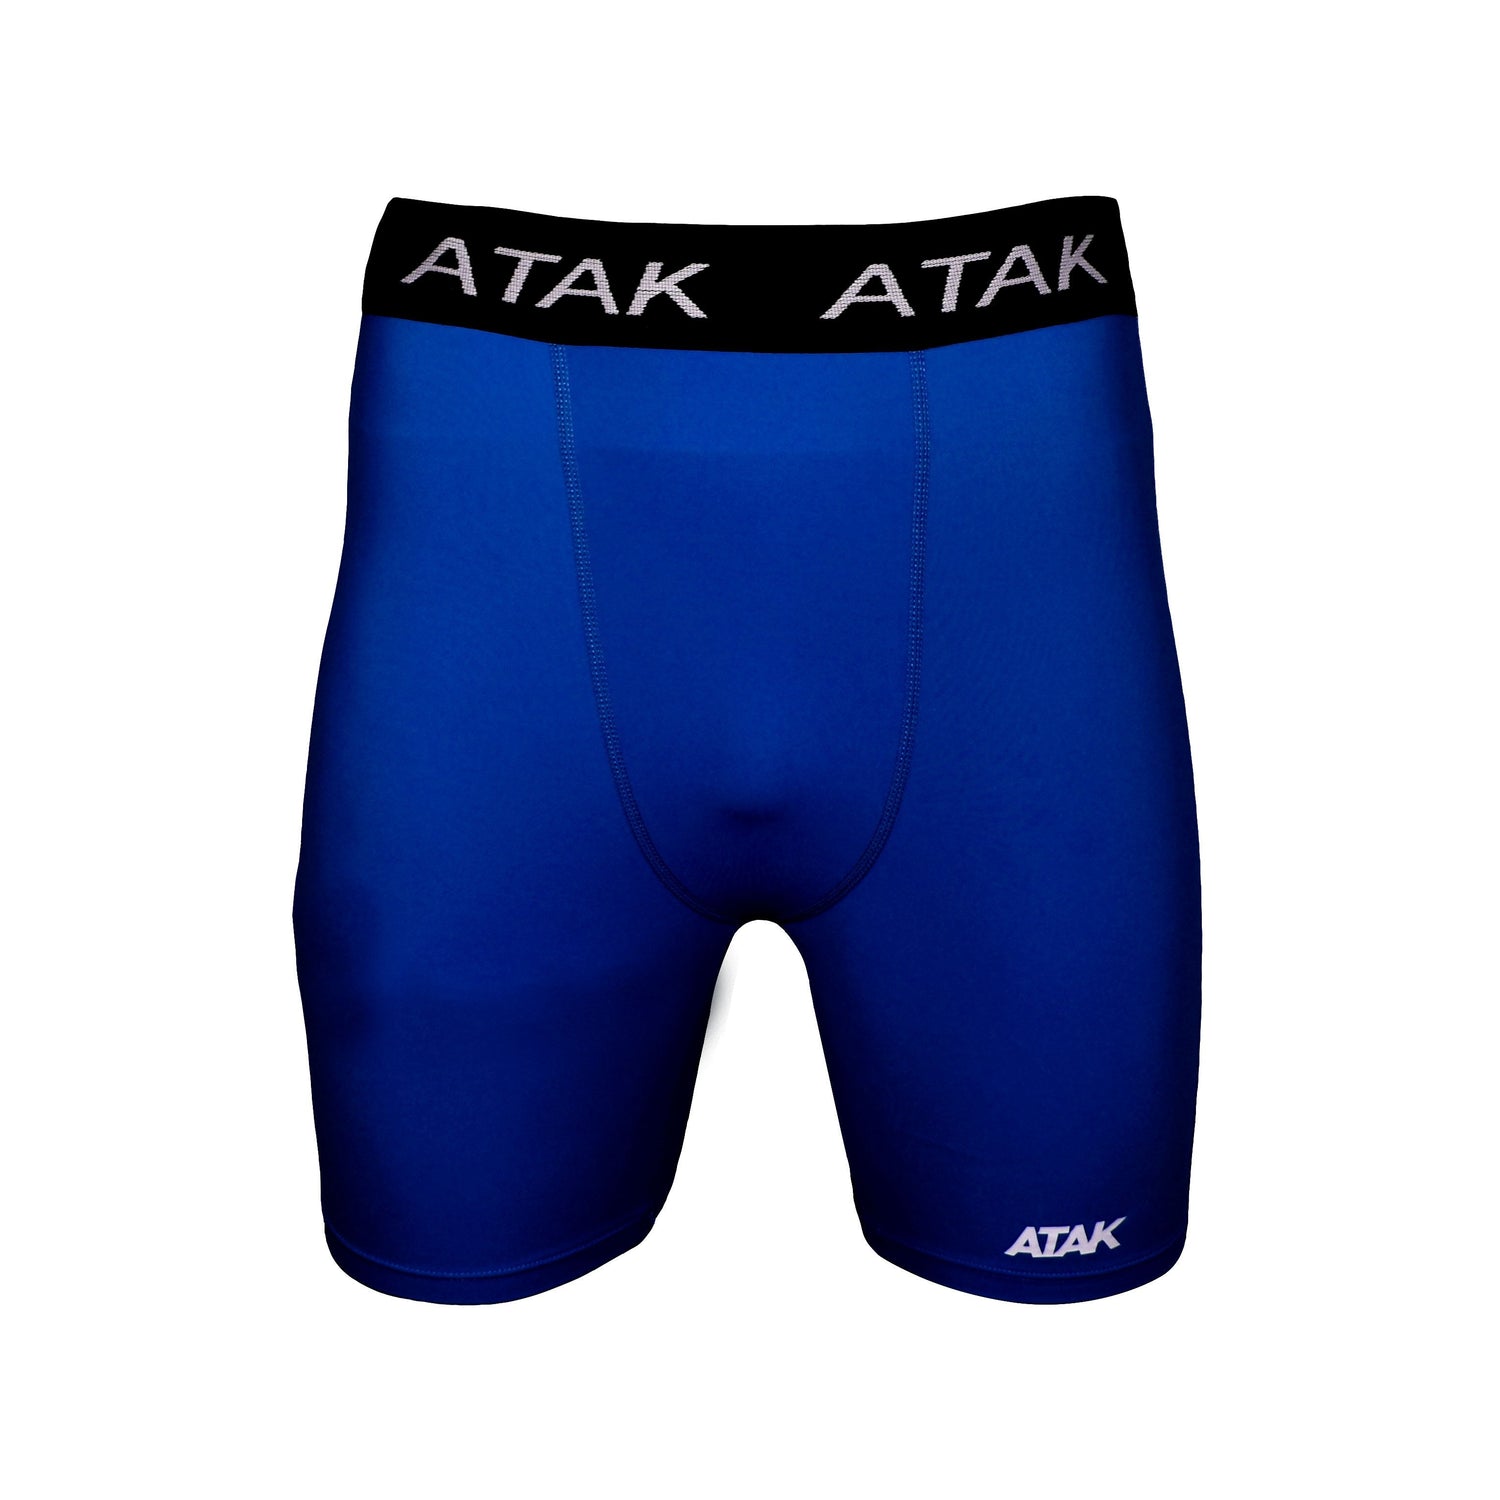 ATAK Men's Compression Shorts